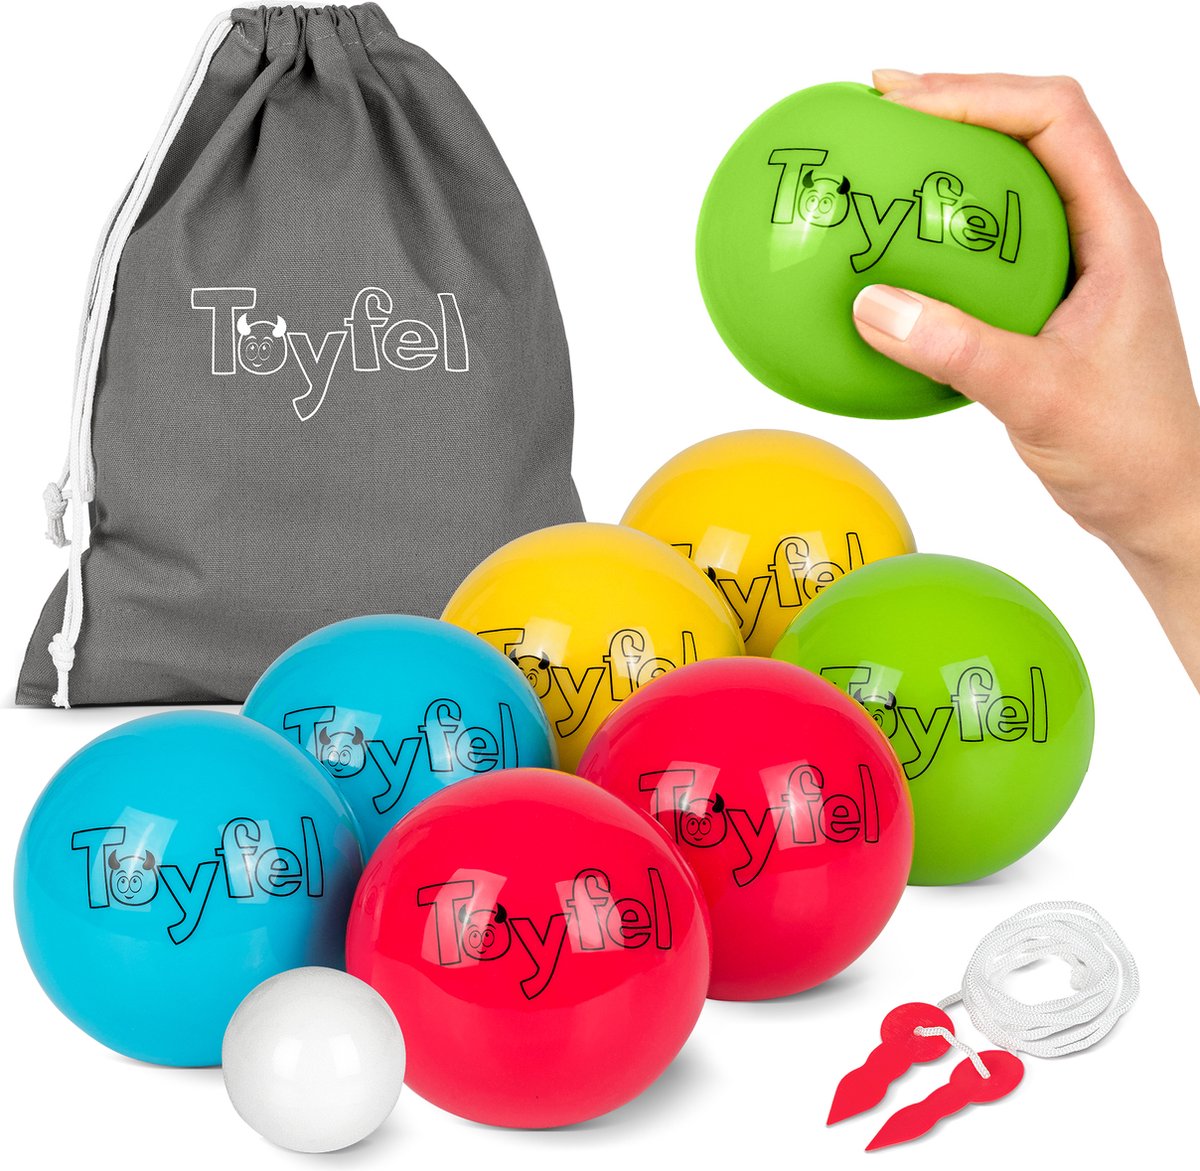 Toyfel Leo – Zachte Pentaque Jeu de Boules Spel met 8 Boule Ballen, Doelbal, Draagtas & Meetlint – Outdoor & Indoor Boccia Tuinspel - Toyfel